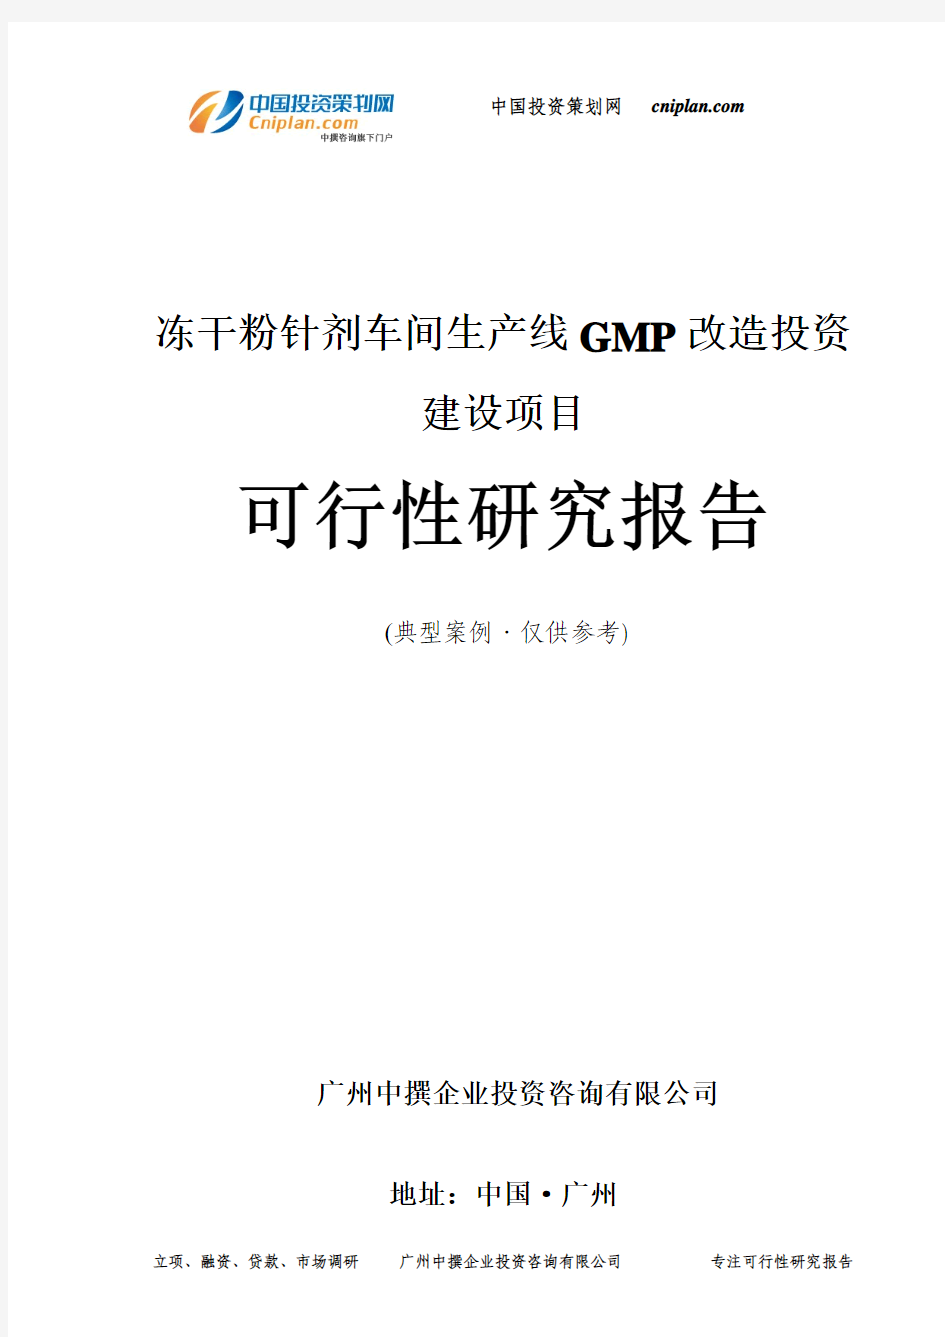 冻干粉针剂车间生产线GMP改造投资建设项目可行性研究报告-广州中撰咨询